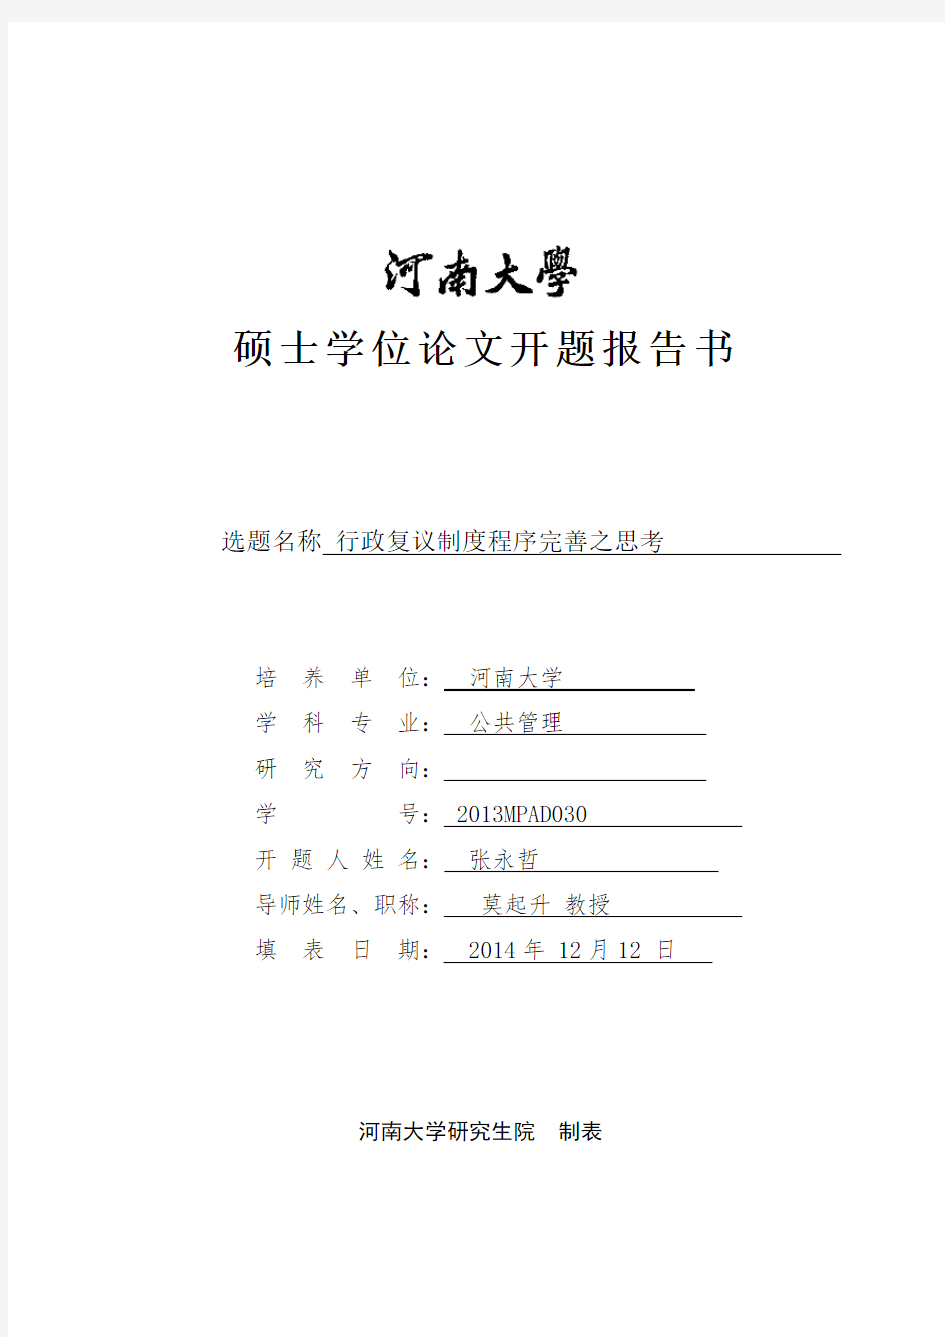 河南大学硕士学位论文开题报告书模板(1)